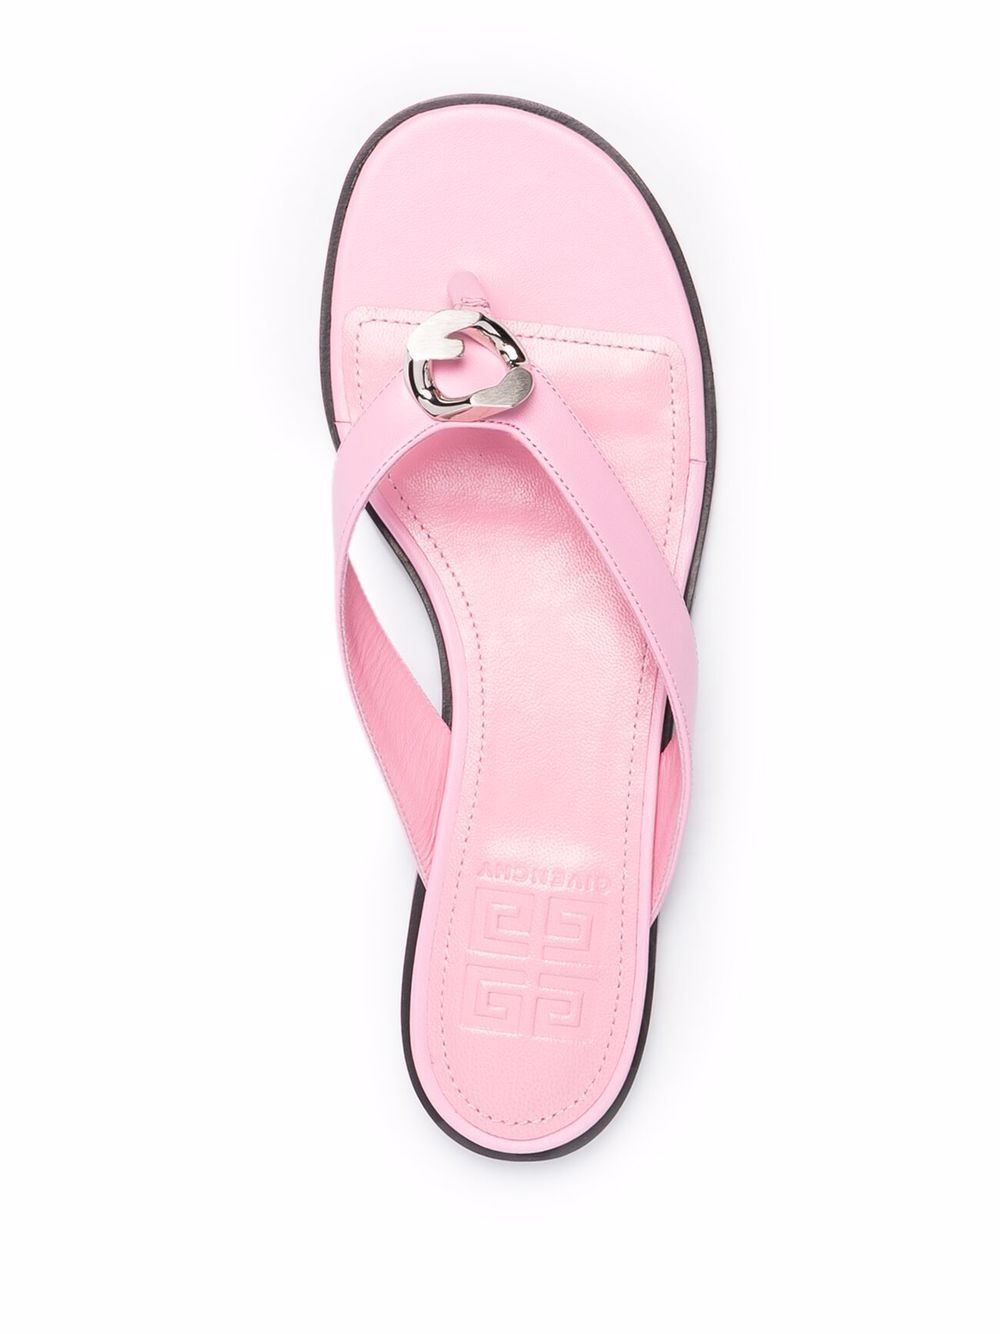 фото Givenchy сандалии с g-образной пряжкой